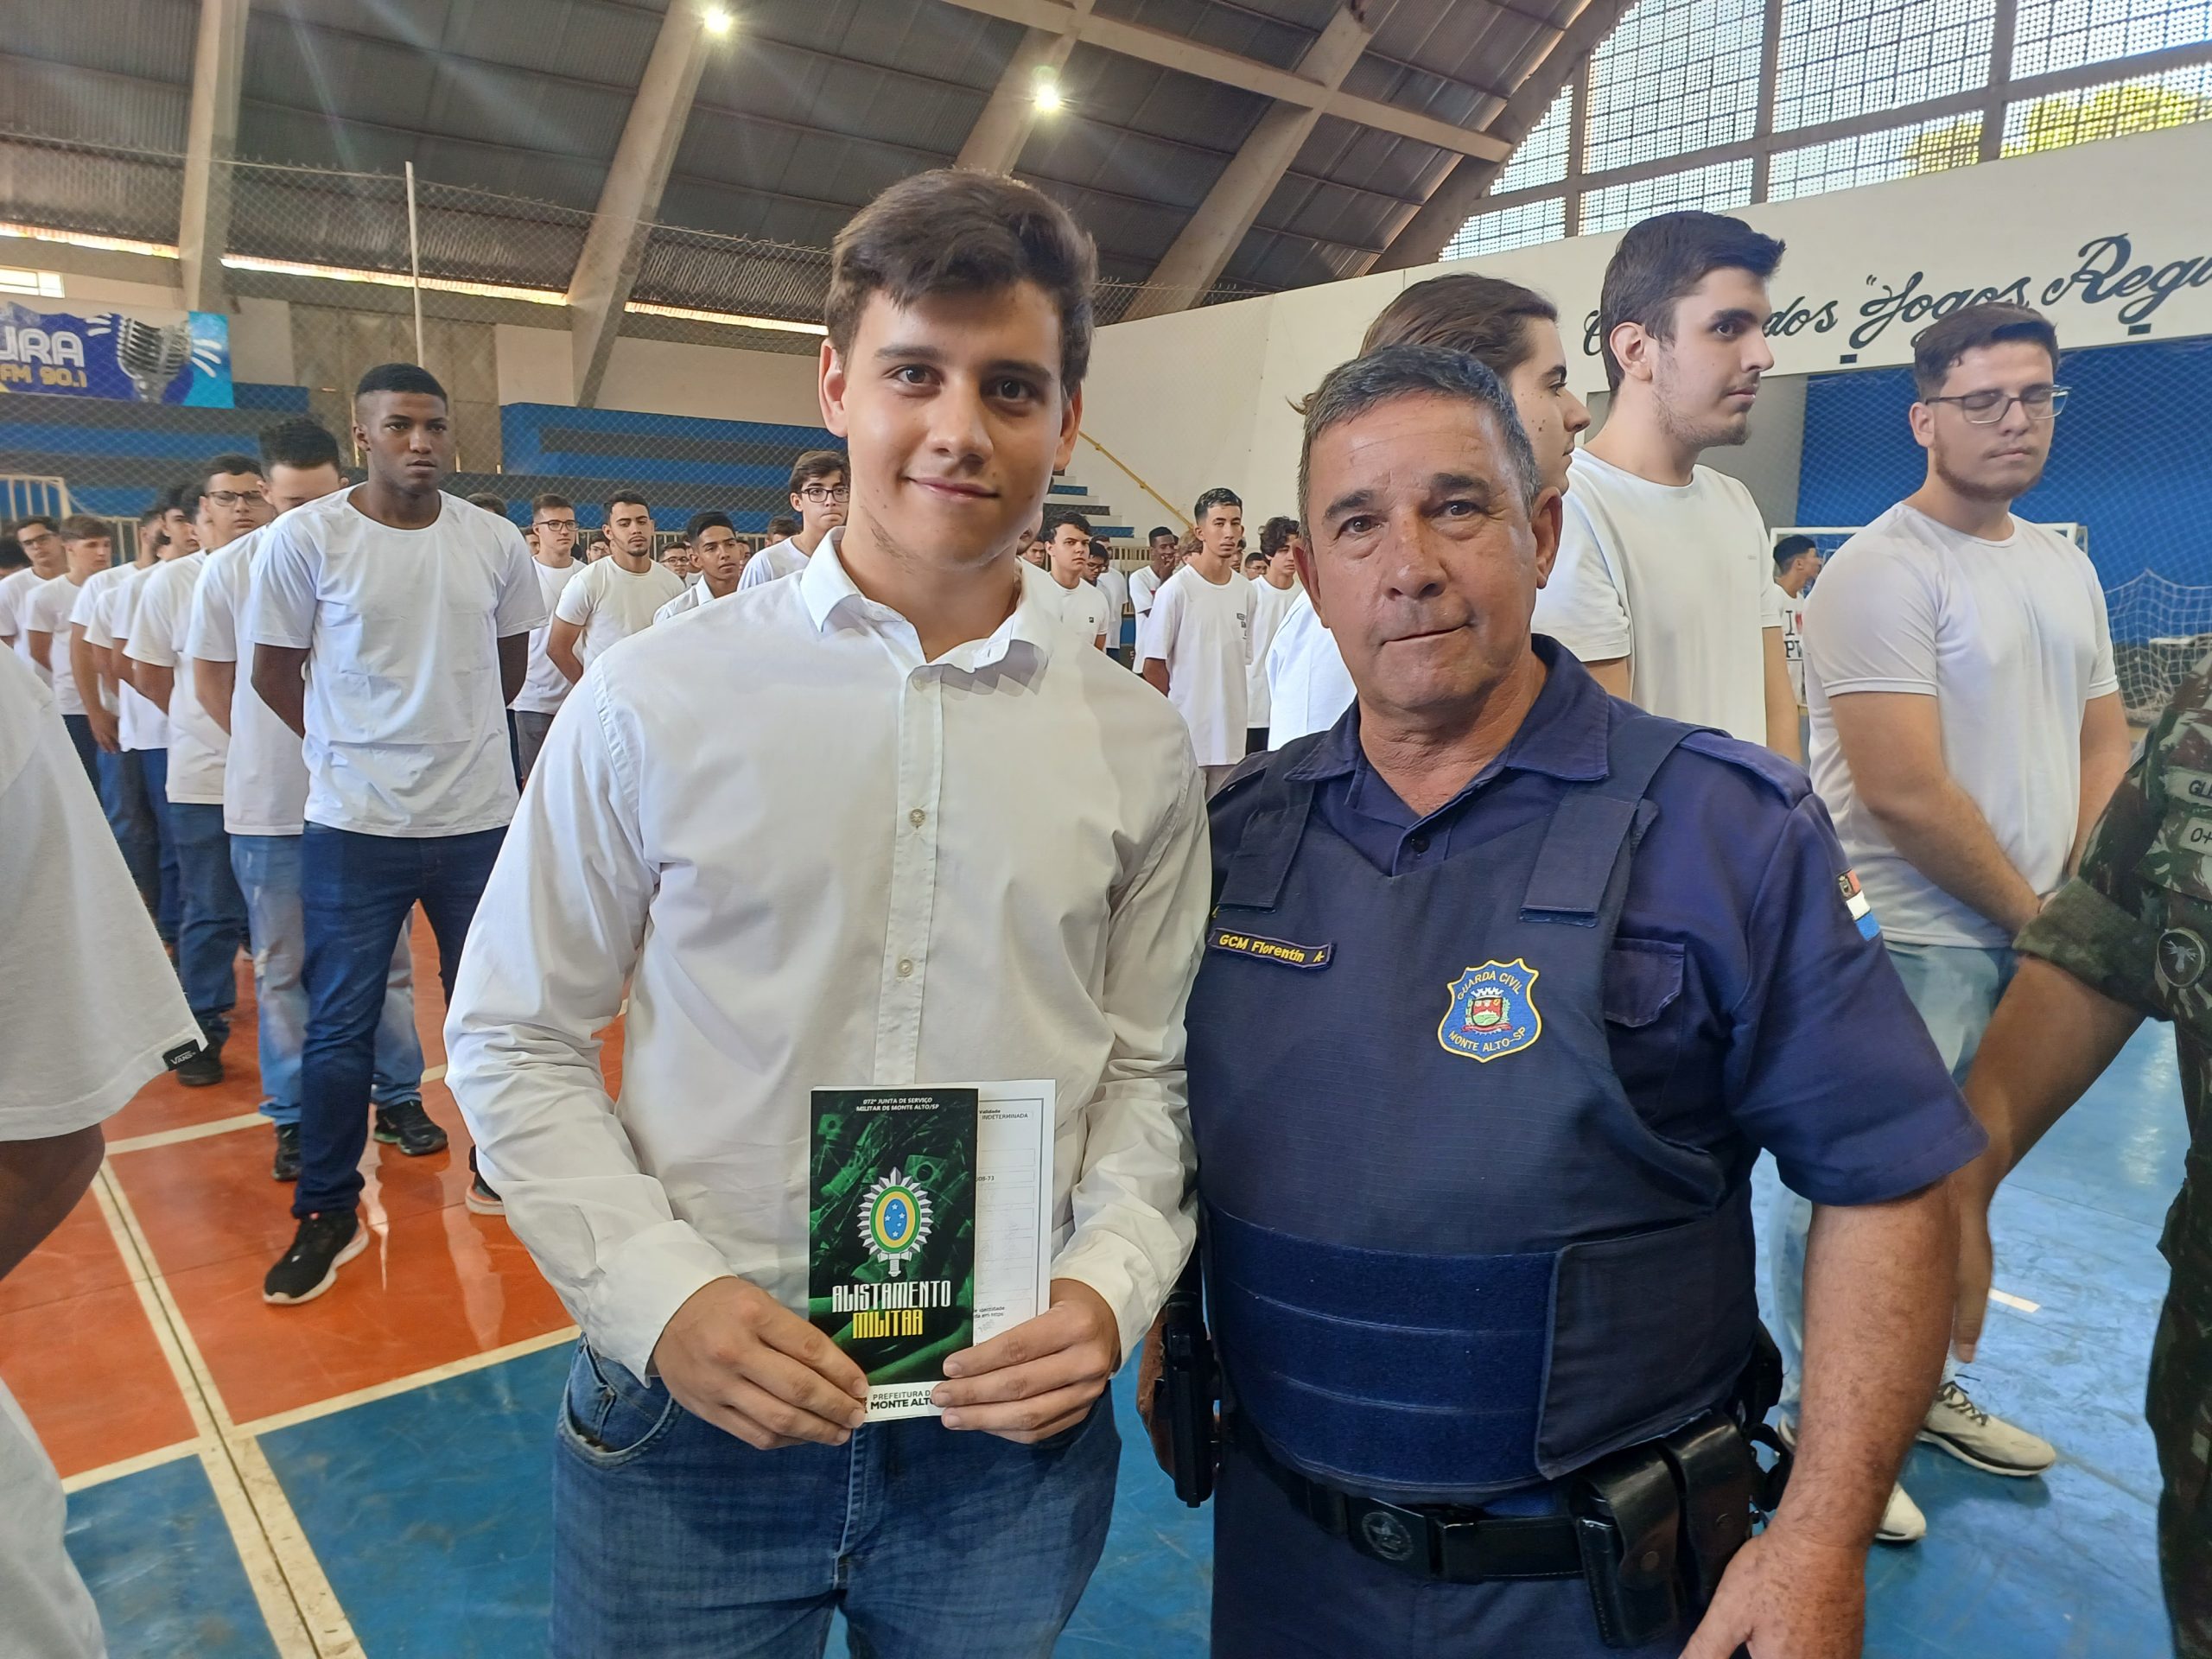 Alistamento Militar: Jovens que completam 18 anos em 2022 - Prefeitura de  Salgado São Felix - PB